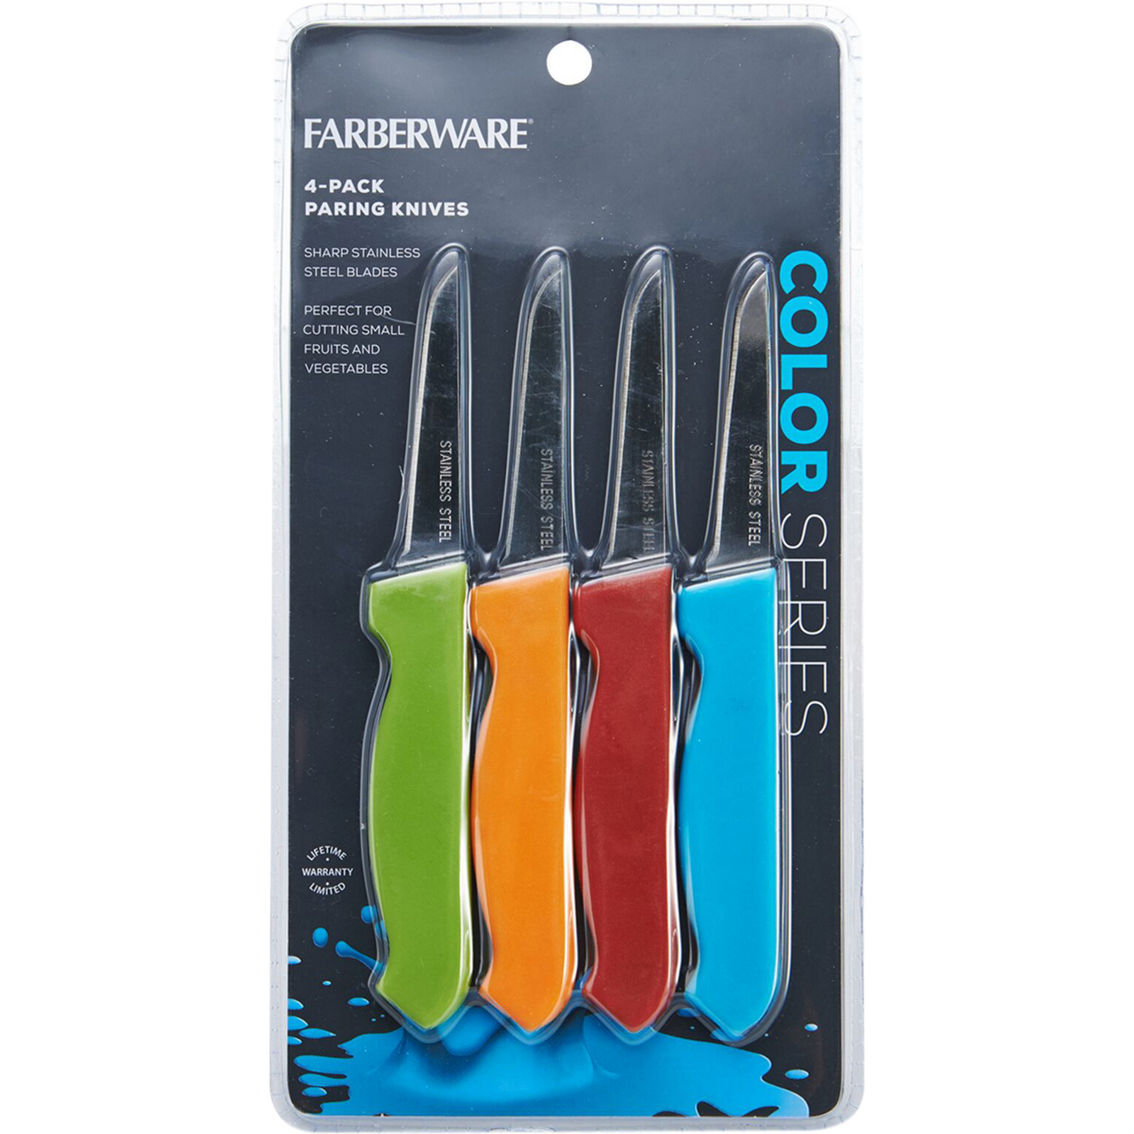 Farberware Color Series Paring Knives 4 pk. - Image 2 of 2